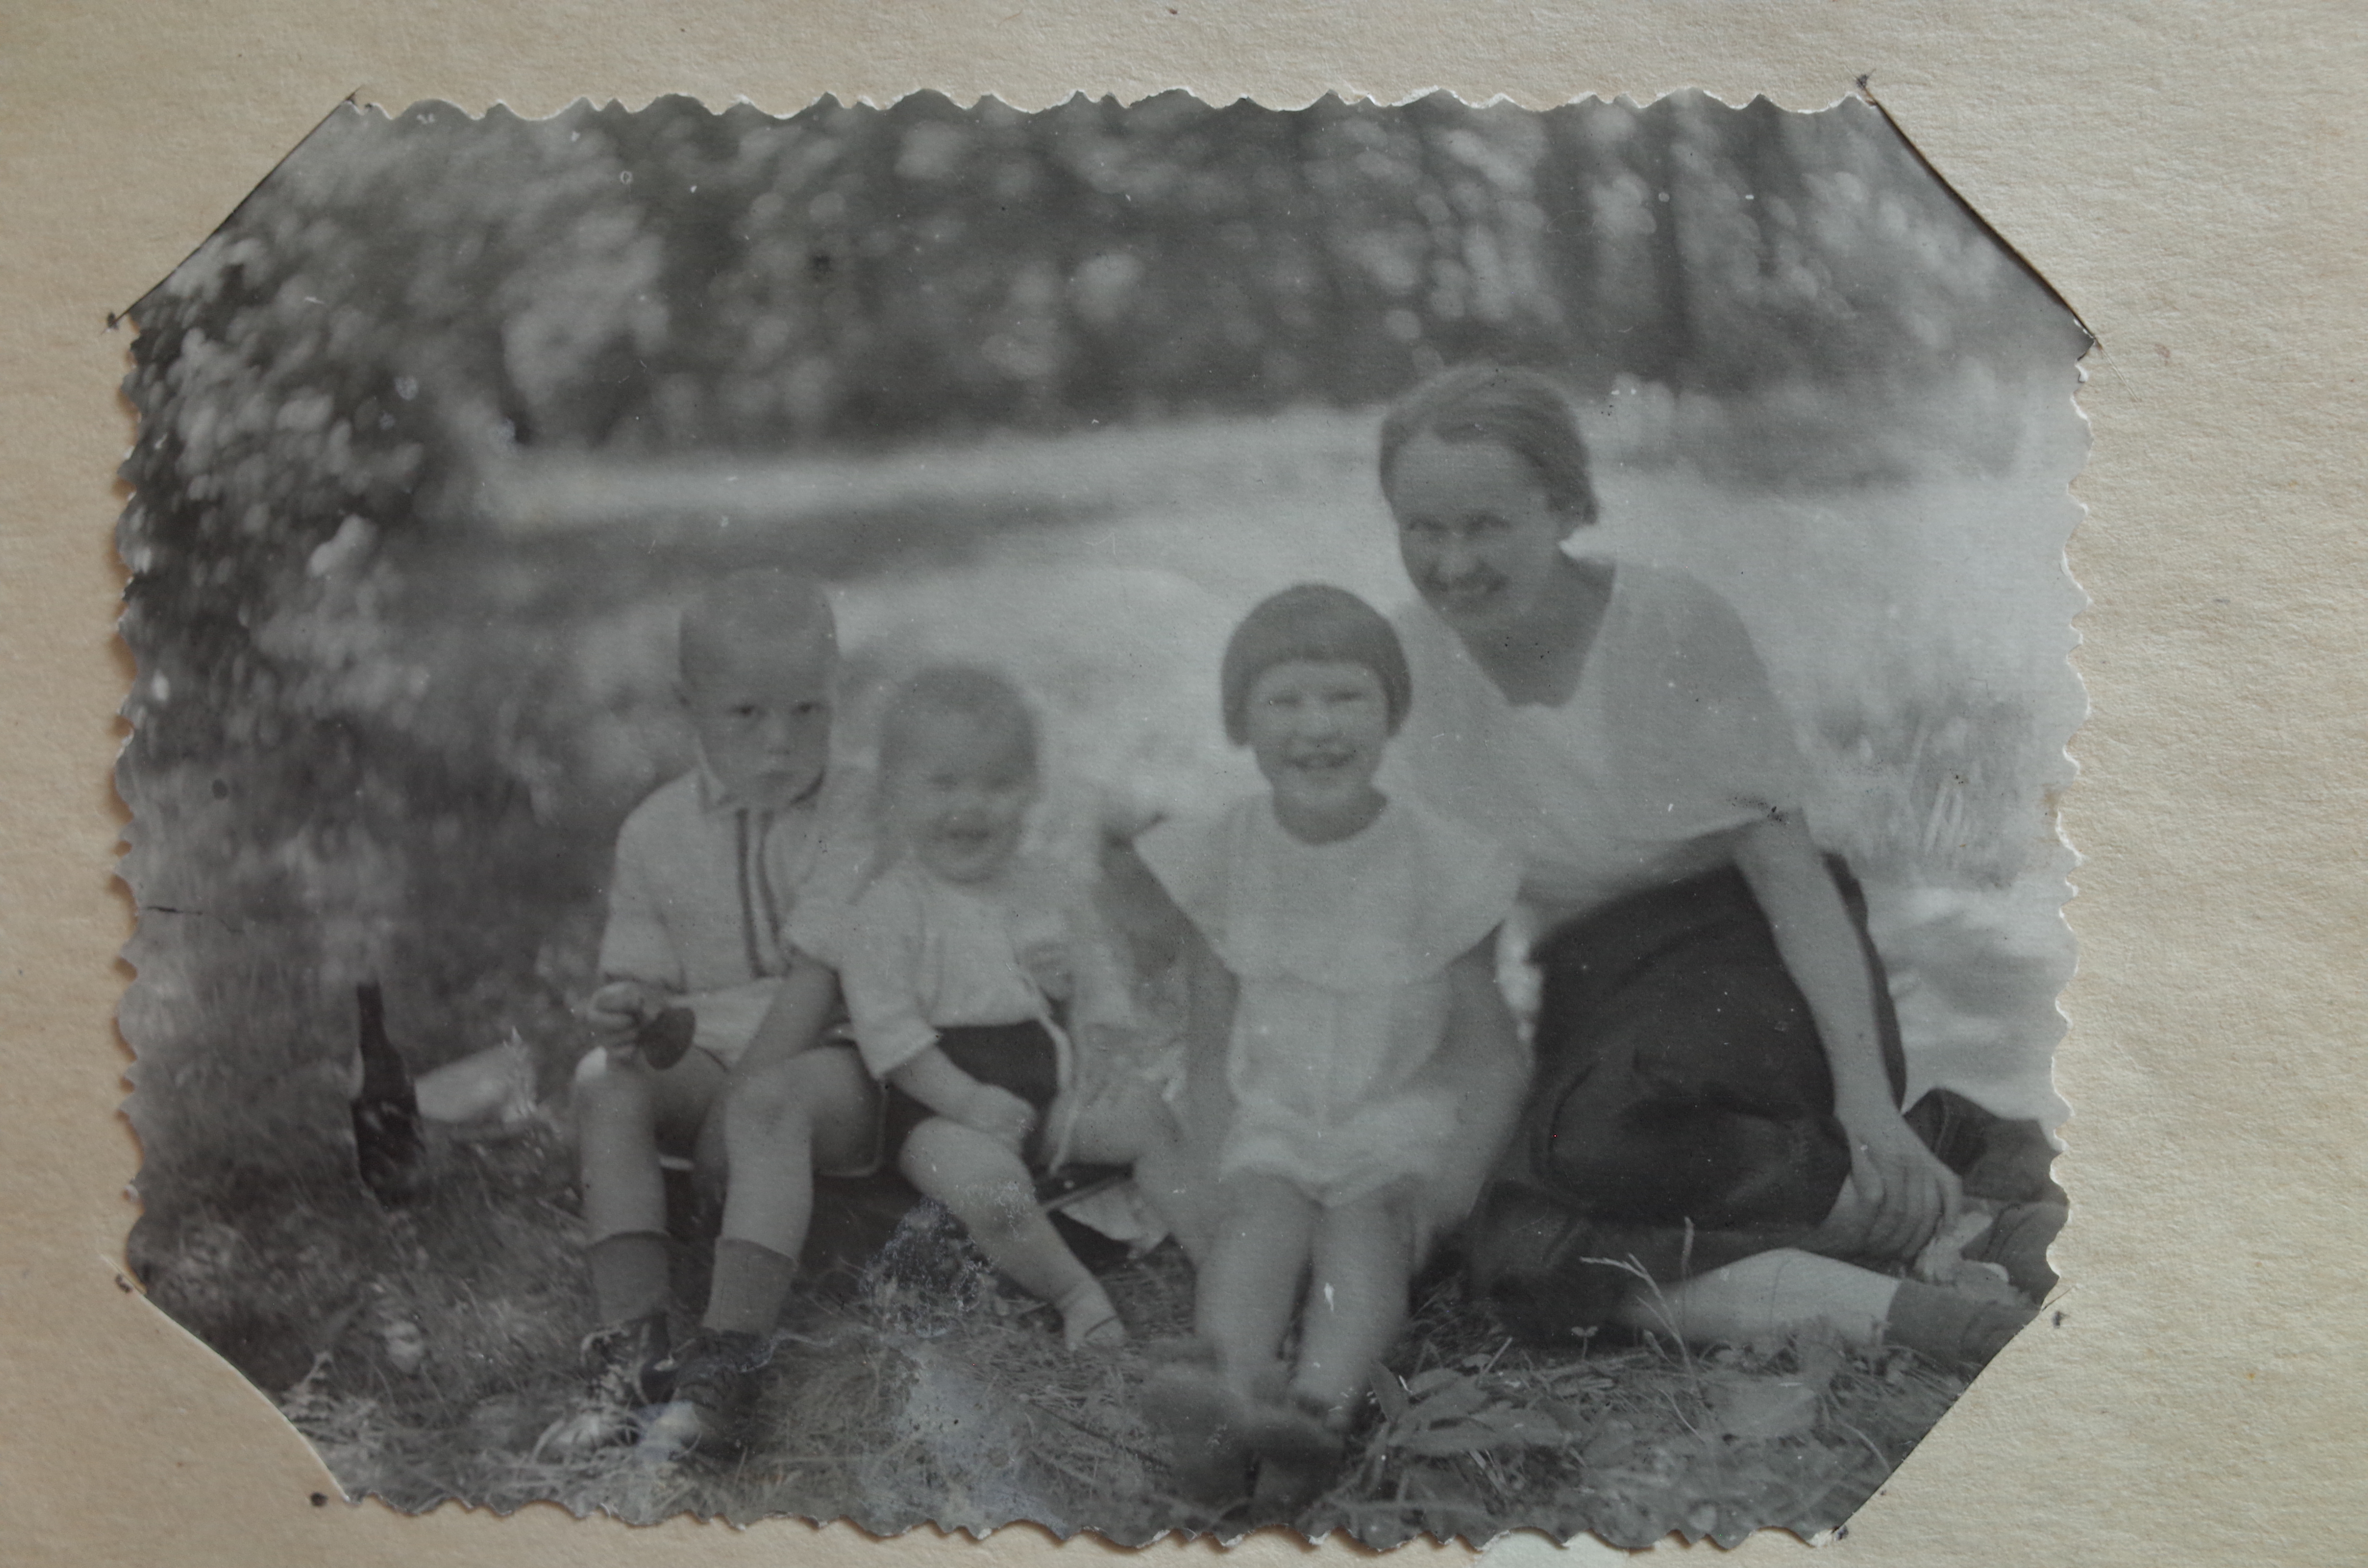 Семья Макаровых во время войны: Вова, брат Женя, сестра Аля и мама Елена